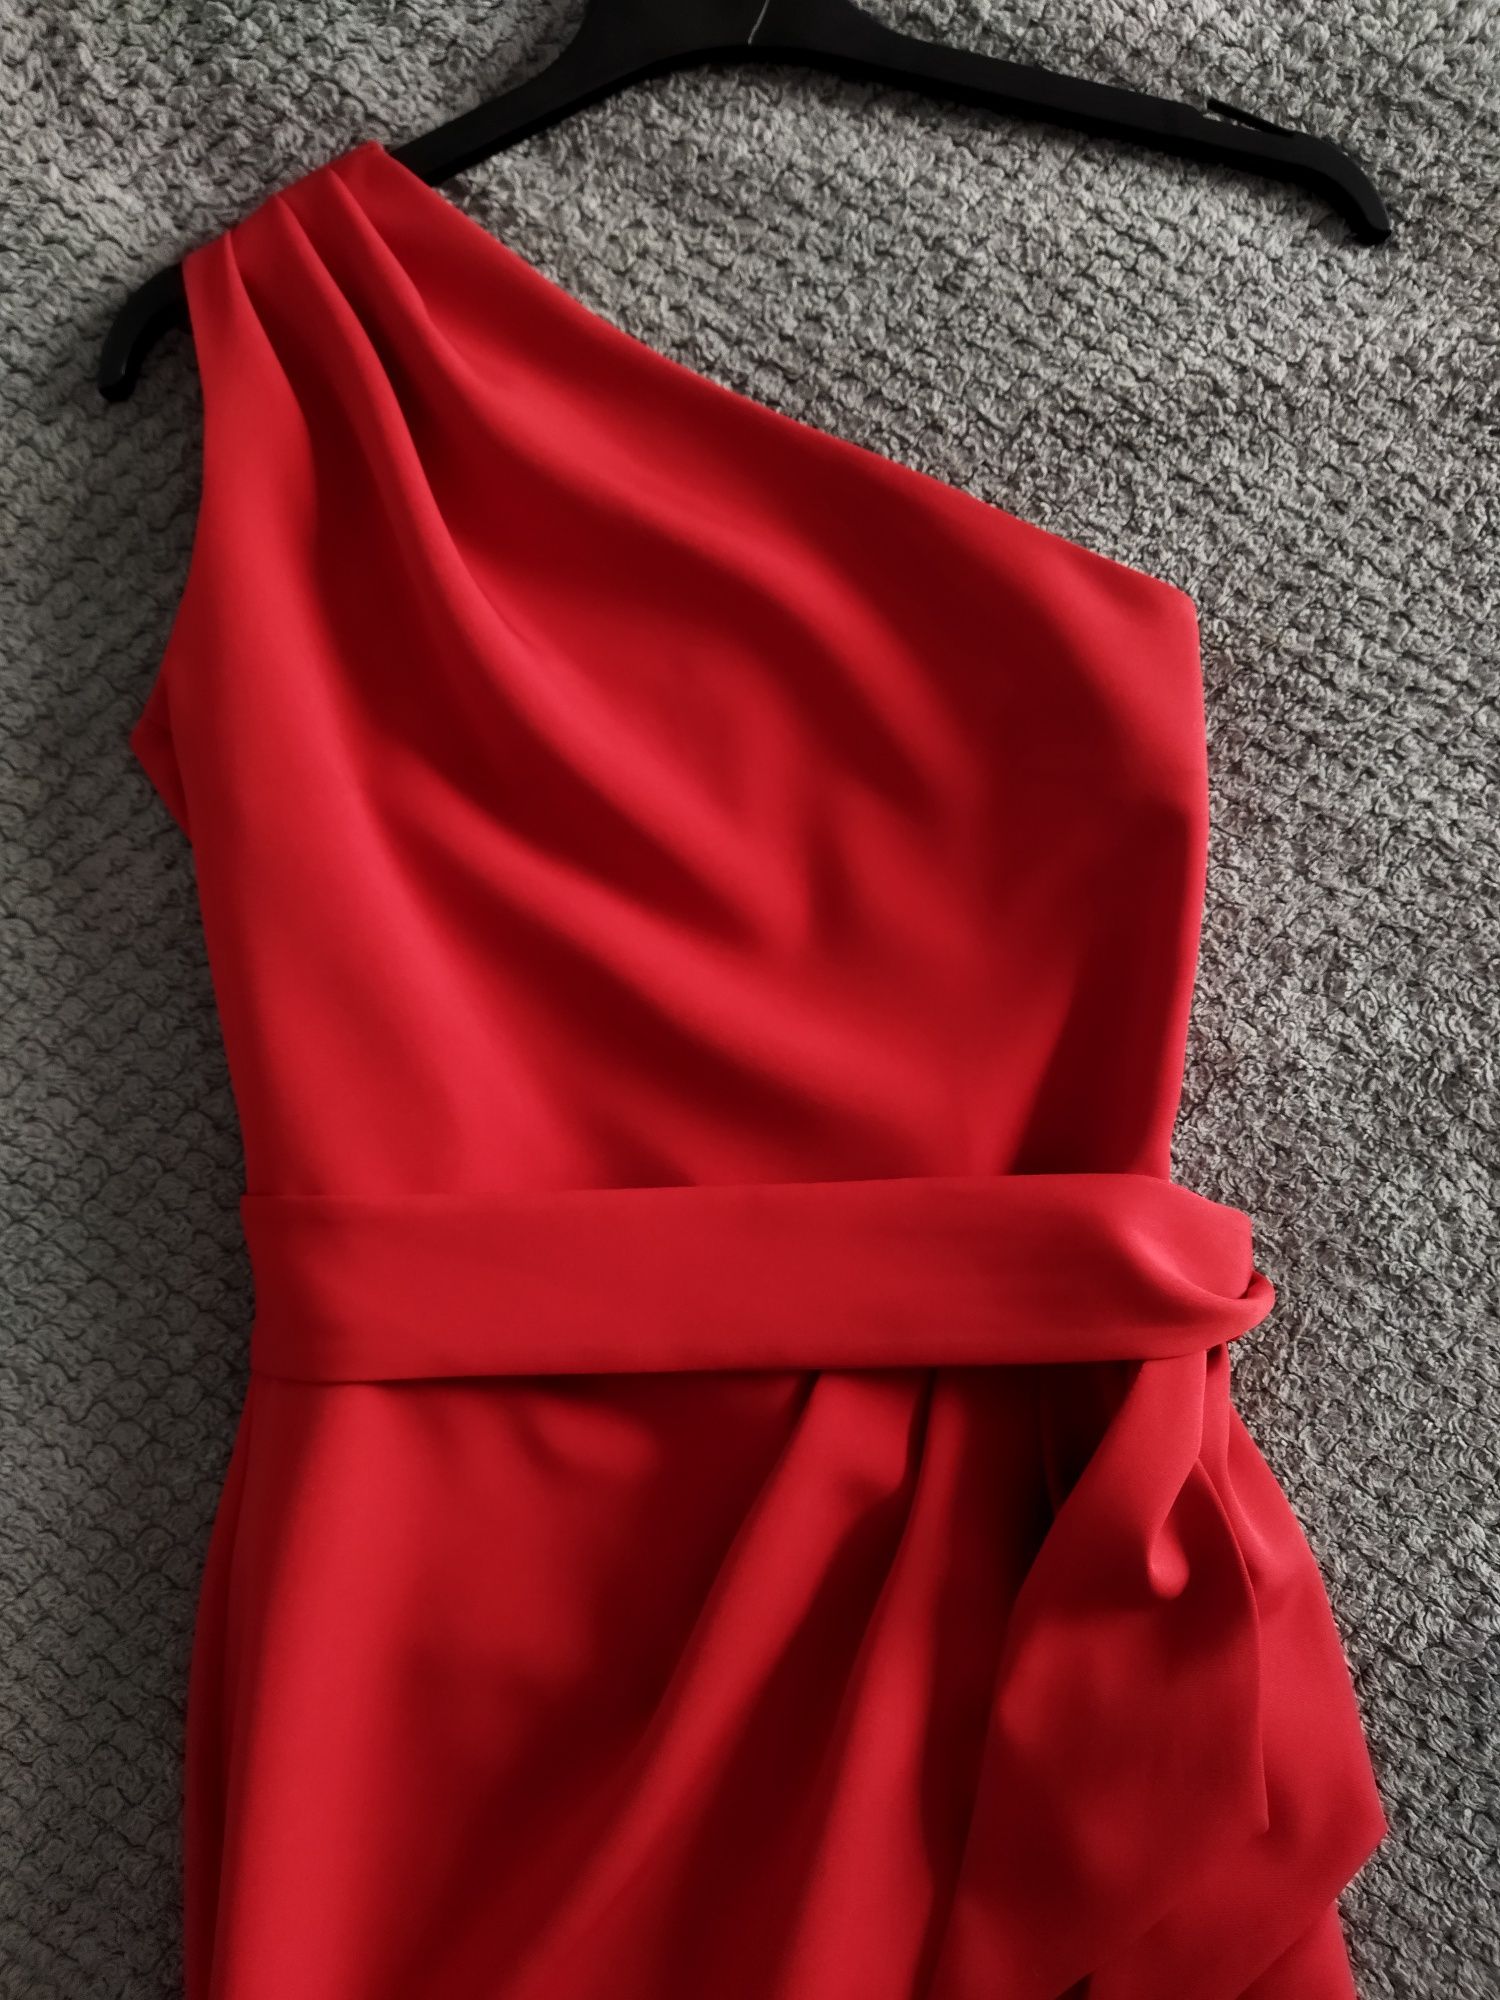 Elegancka wizytowa sukienka damska czerwona na jedno ramię Mally xs/s